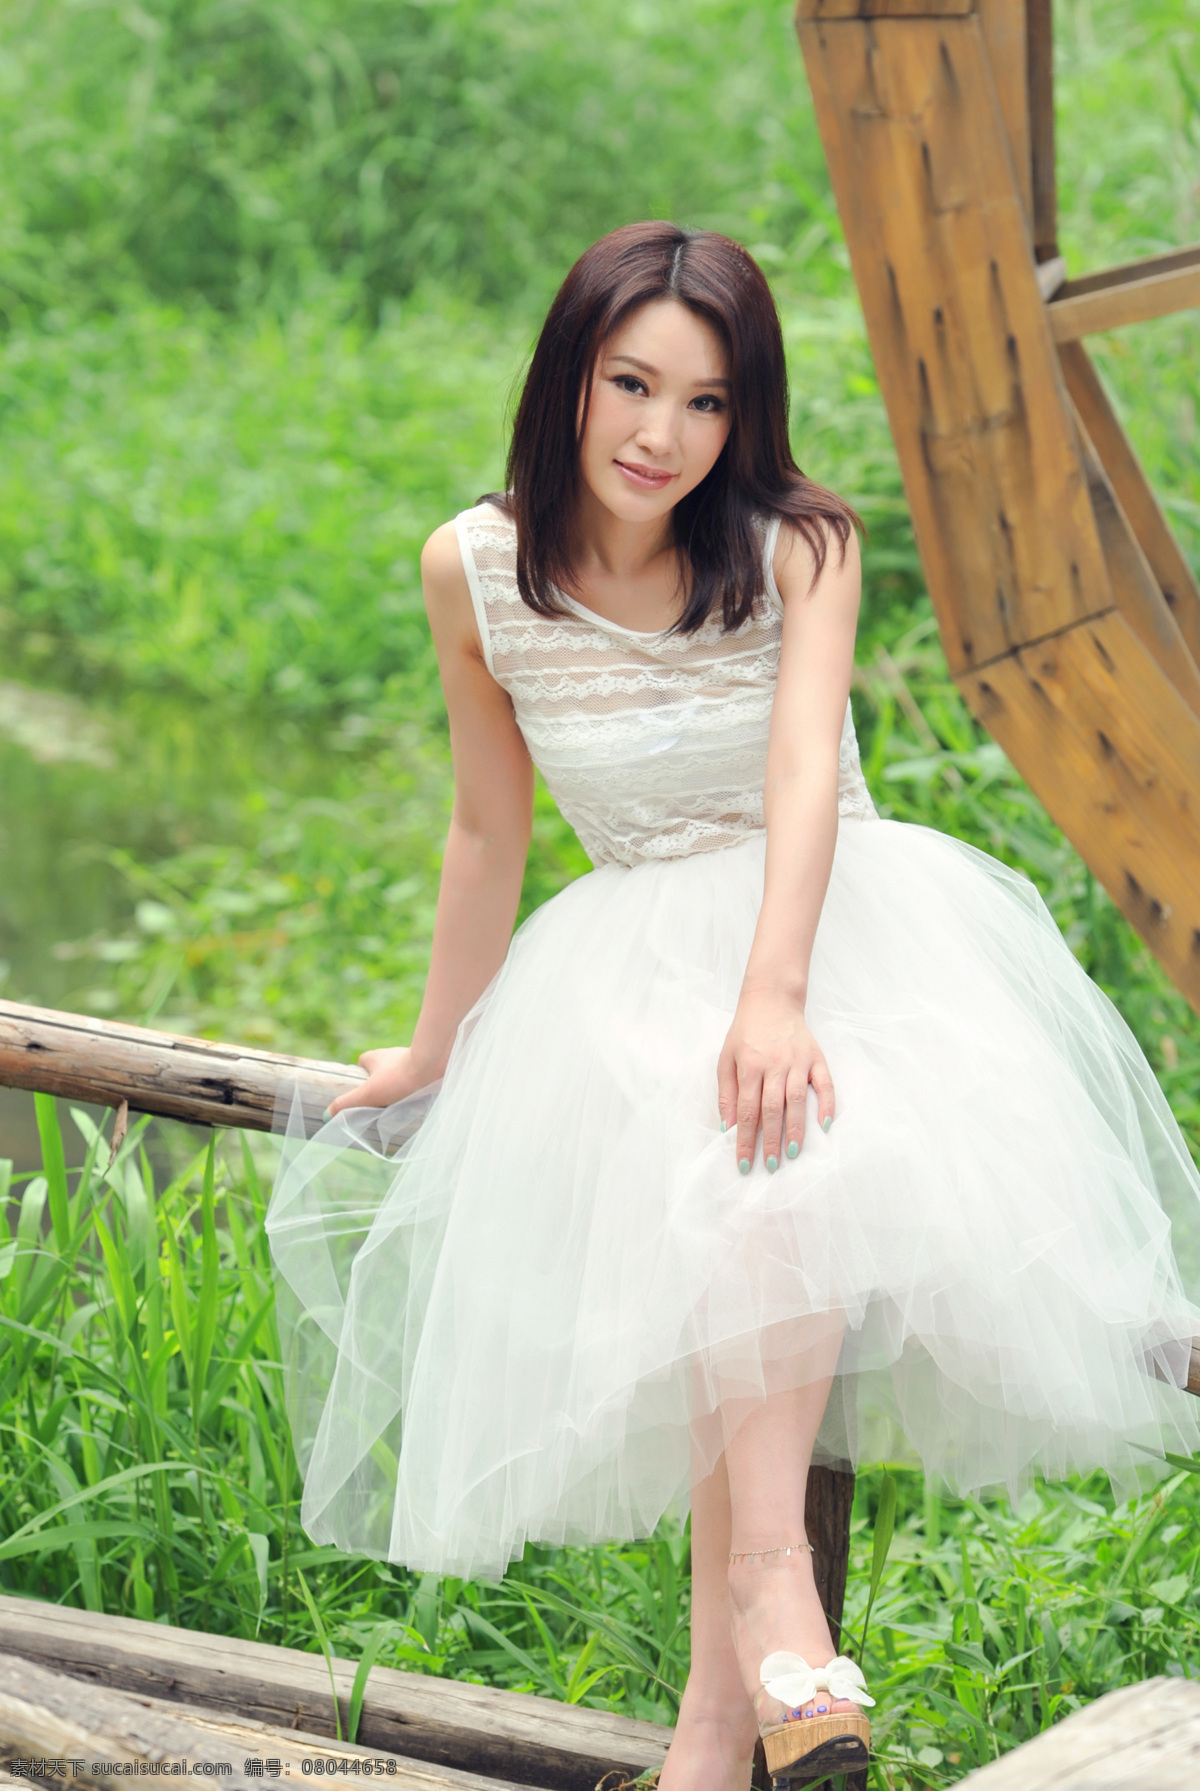 婚纱 室外 写真图片 女明星 女演员 歌手 大陆女星 港台女星 日韩女星 人像 女孩 模特 明星图片 人物图片